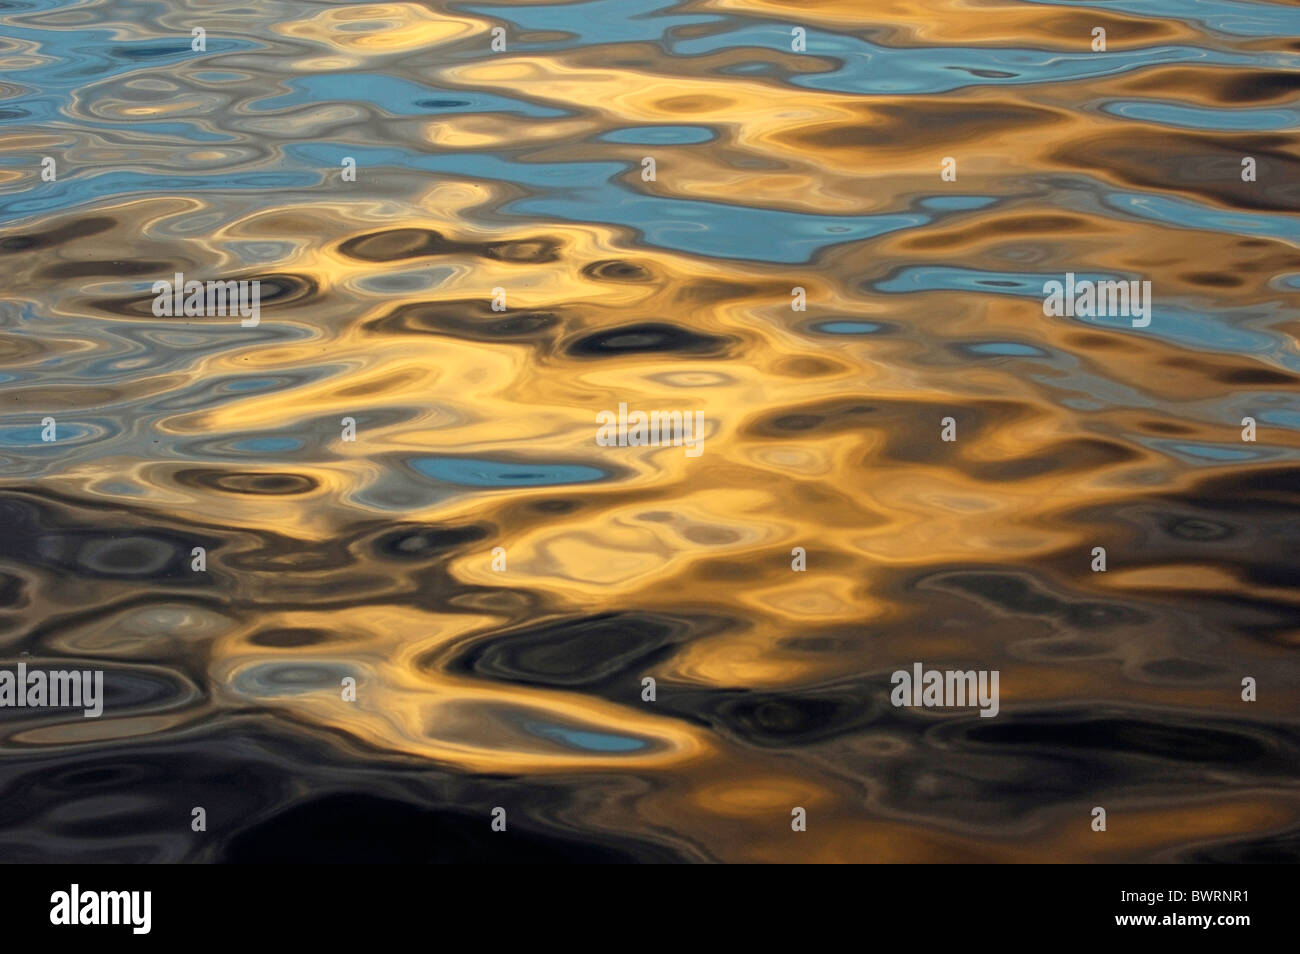 Les ondulations de l'eau, les rayons de soleil qui se reflète sur la surface ridée de la mer océan Banque D'Images